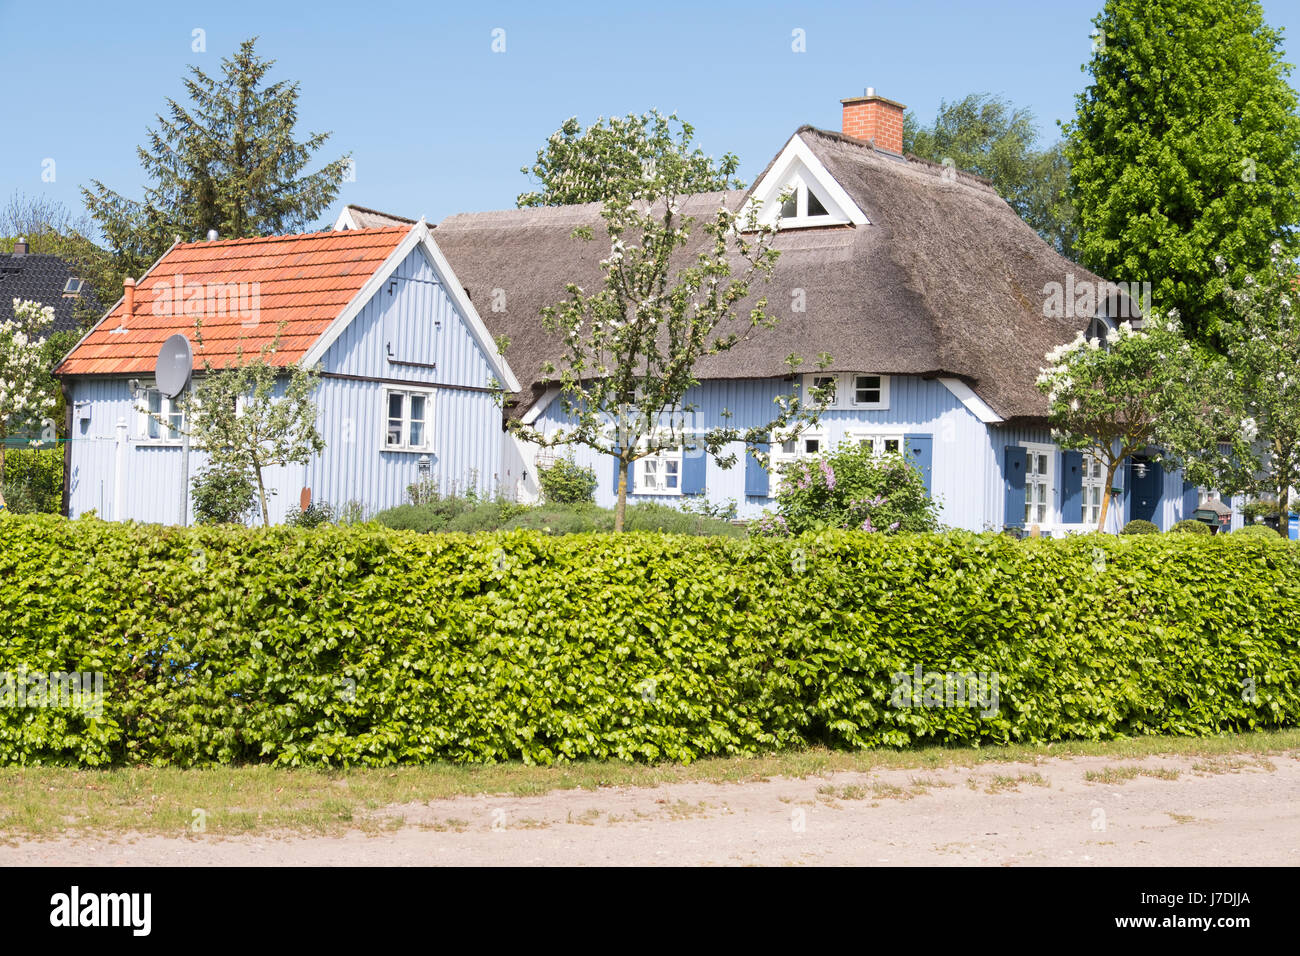 Tipici cottage con il tetto di paglia alla Nato auf dem Darss, Meclenburgo-Pomerania Occidentale, Germania Foto Stock